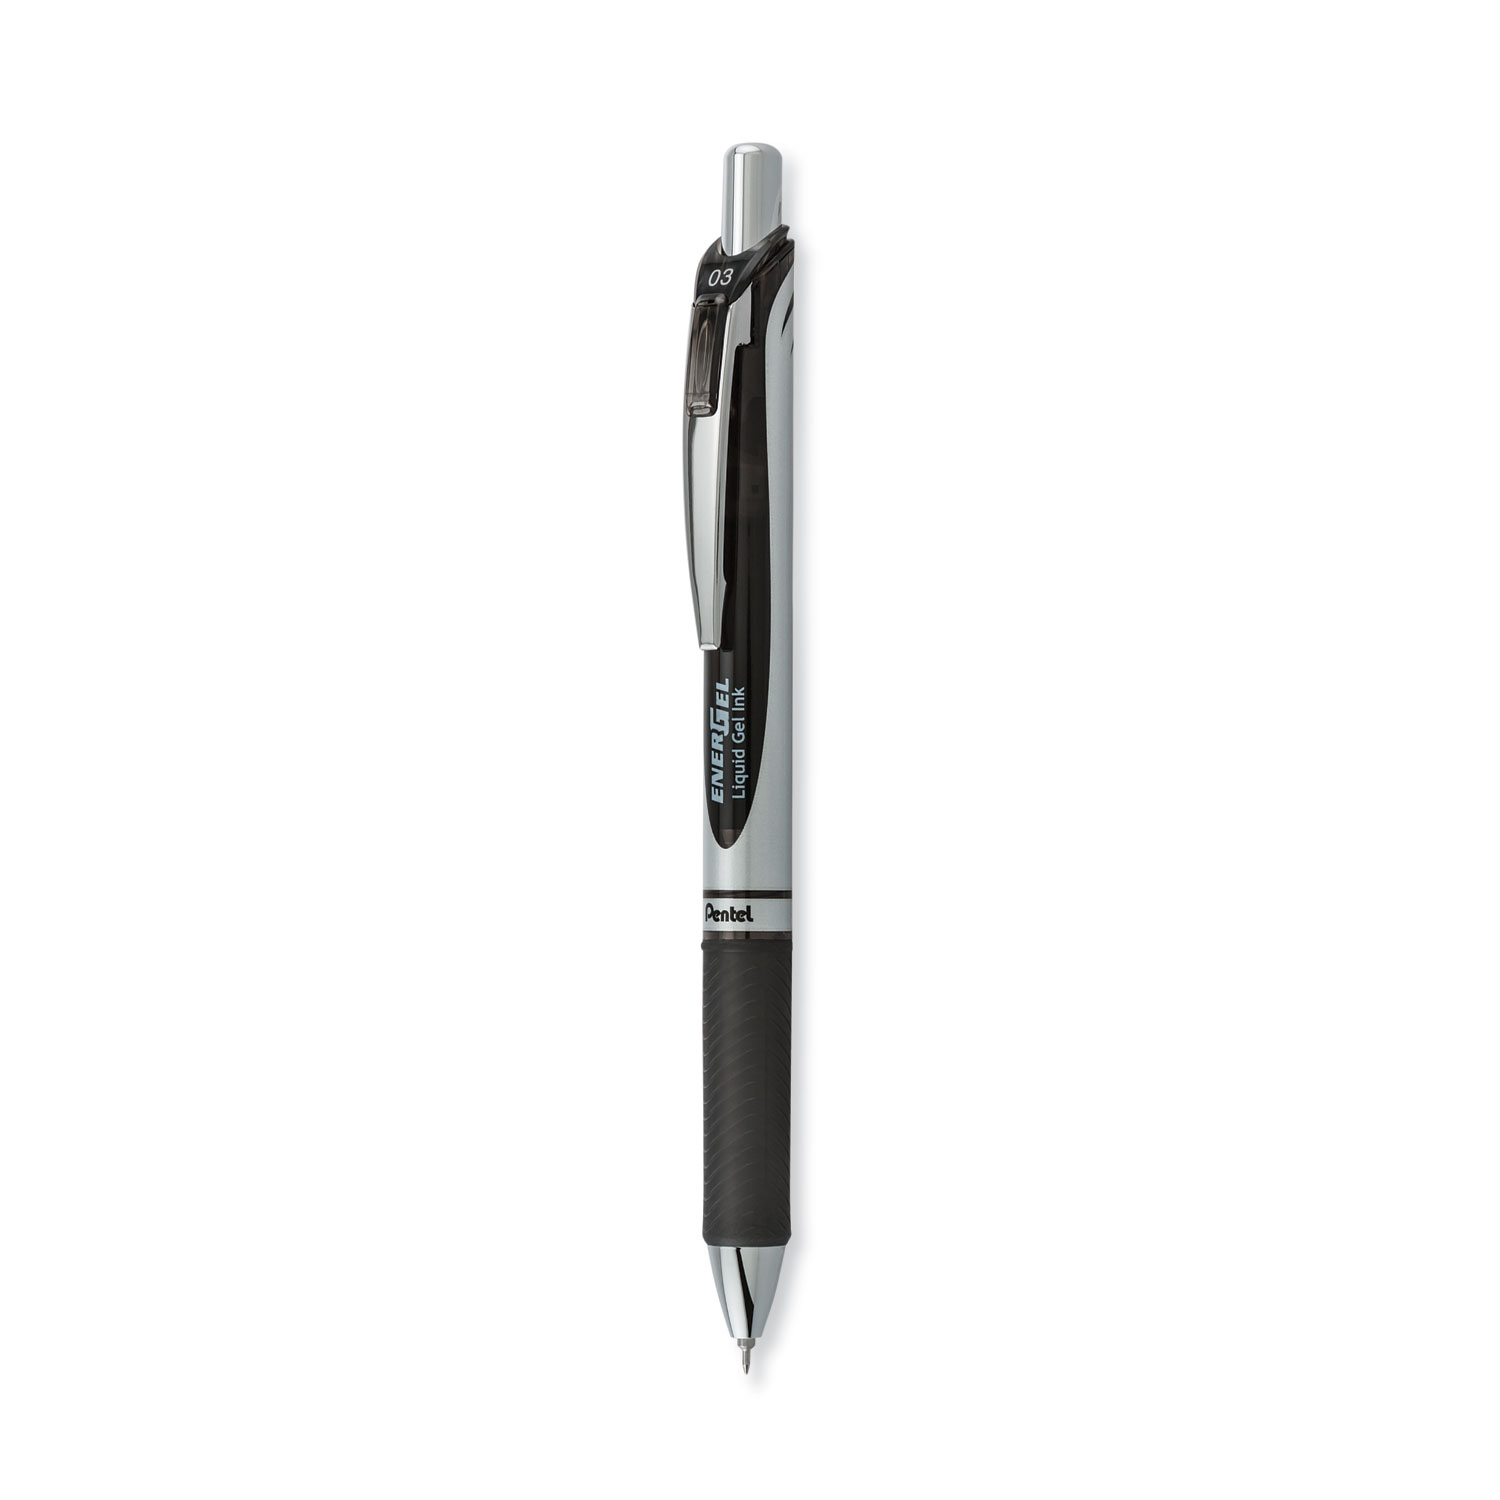 Pentel EnerGel Liquid Gel Pen, Blue Ink, Extra Fine, RTX - 2 pens